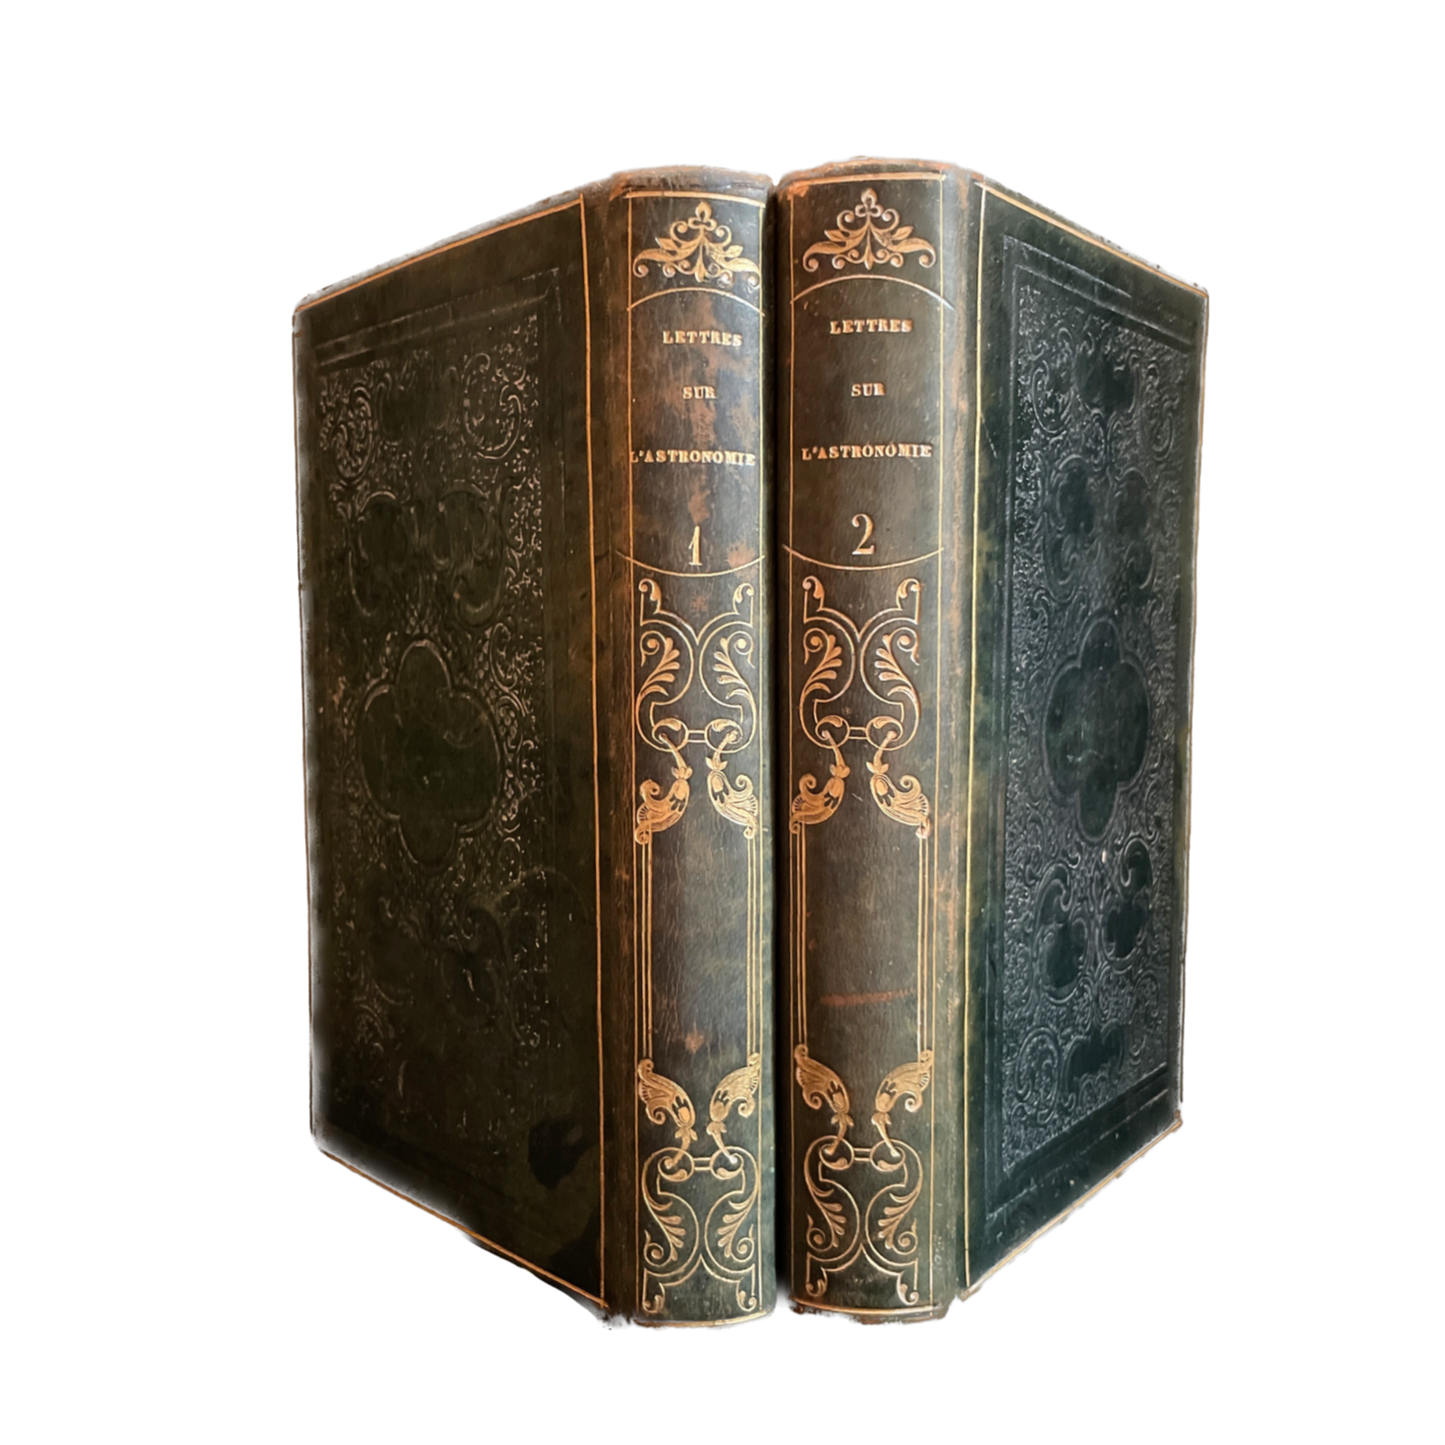 1838 - ALBERT MONTEMONT - Lettres sur l'astronomie